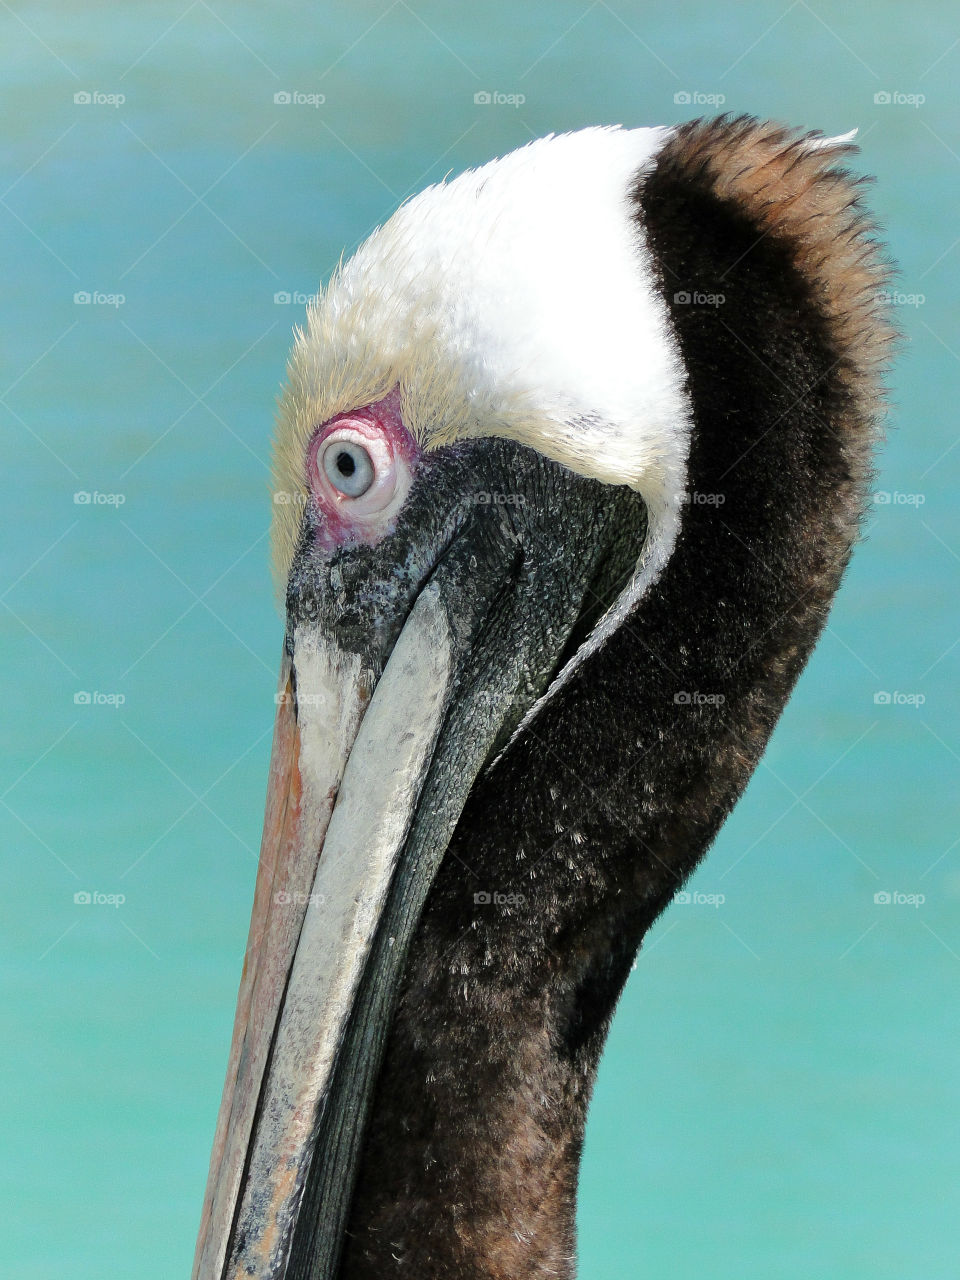 Pelican II